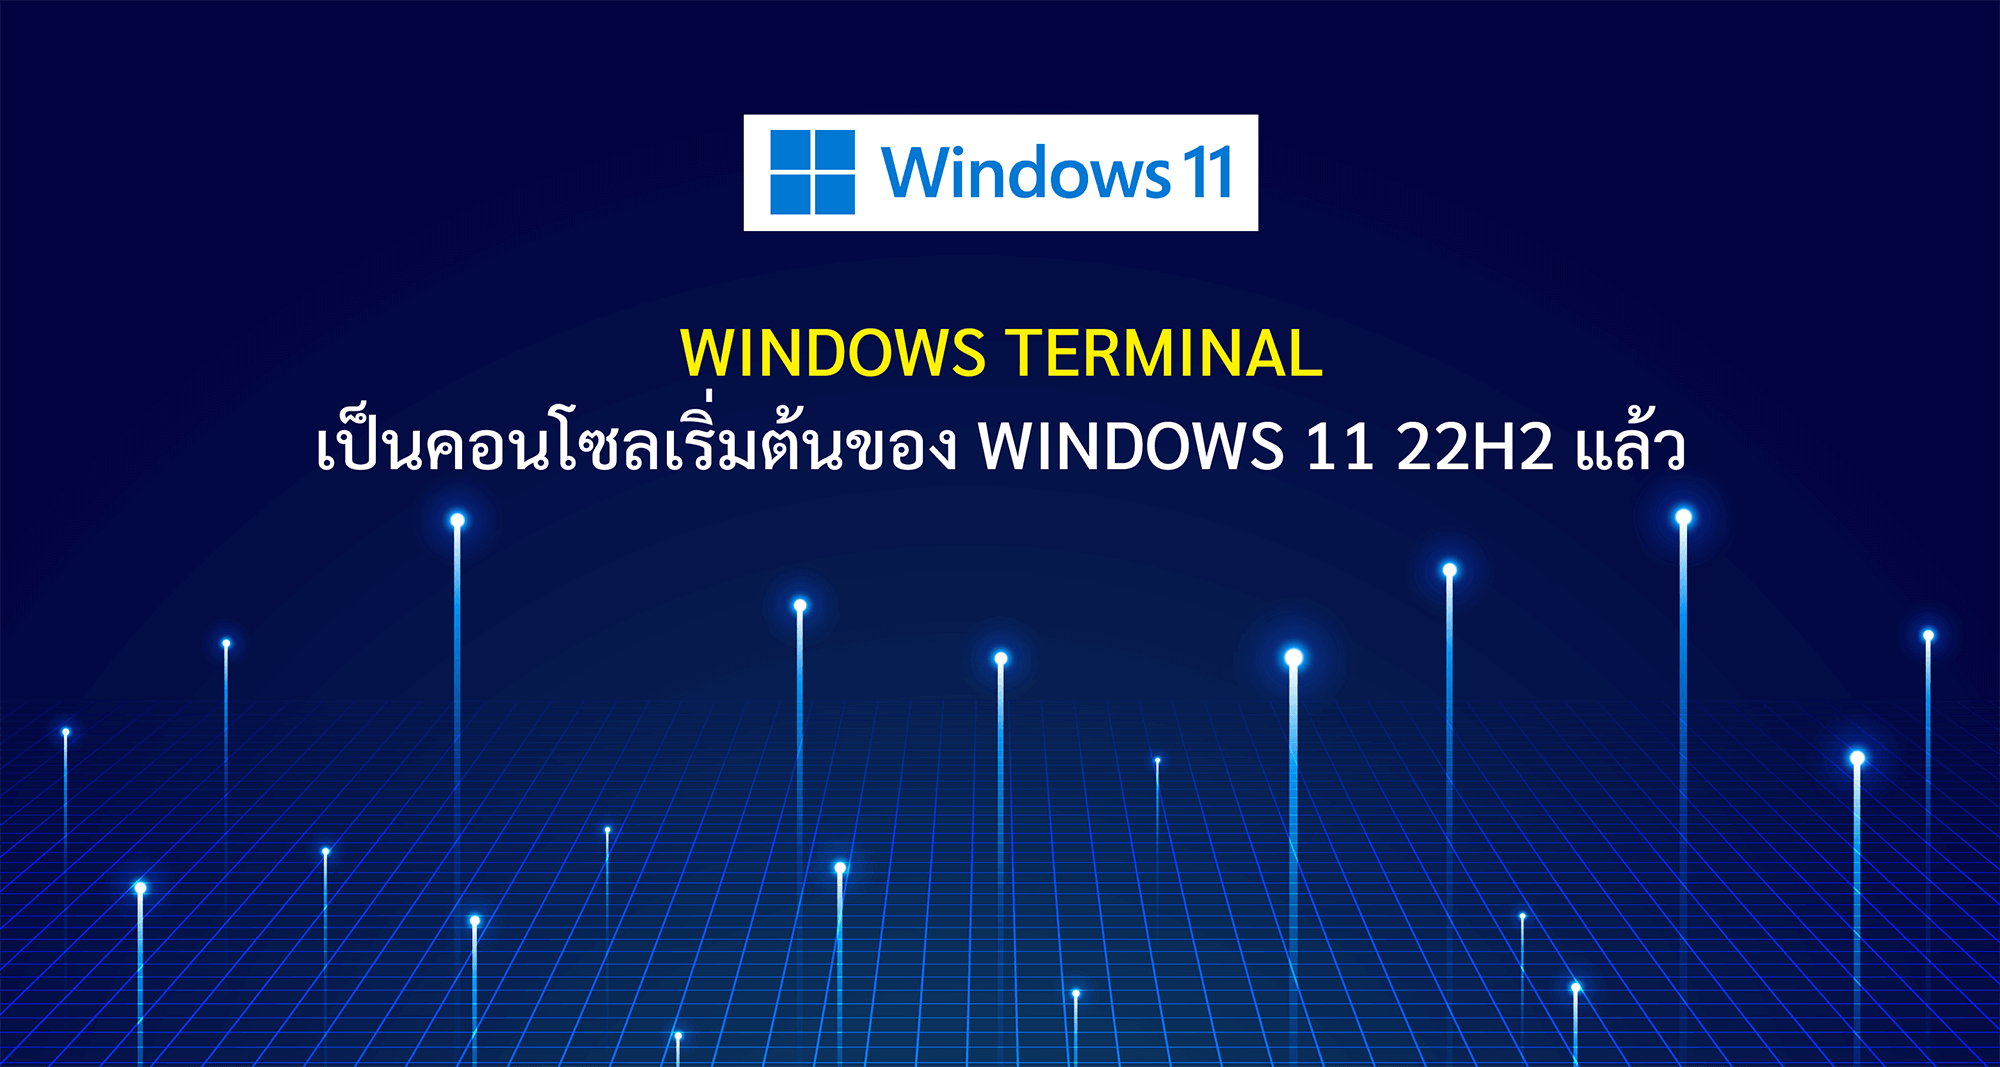 Windows Terminal เป็นคอนโซลเริ่มต้นของ Windows 11 22H2 แล้ว